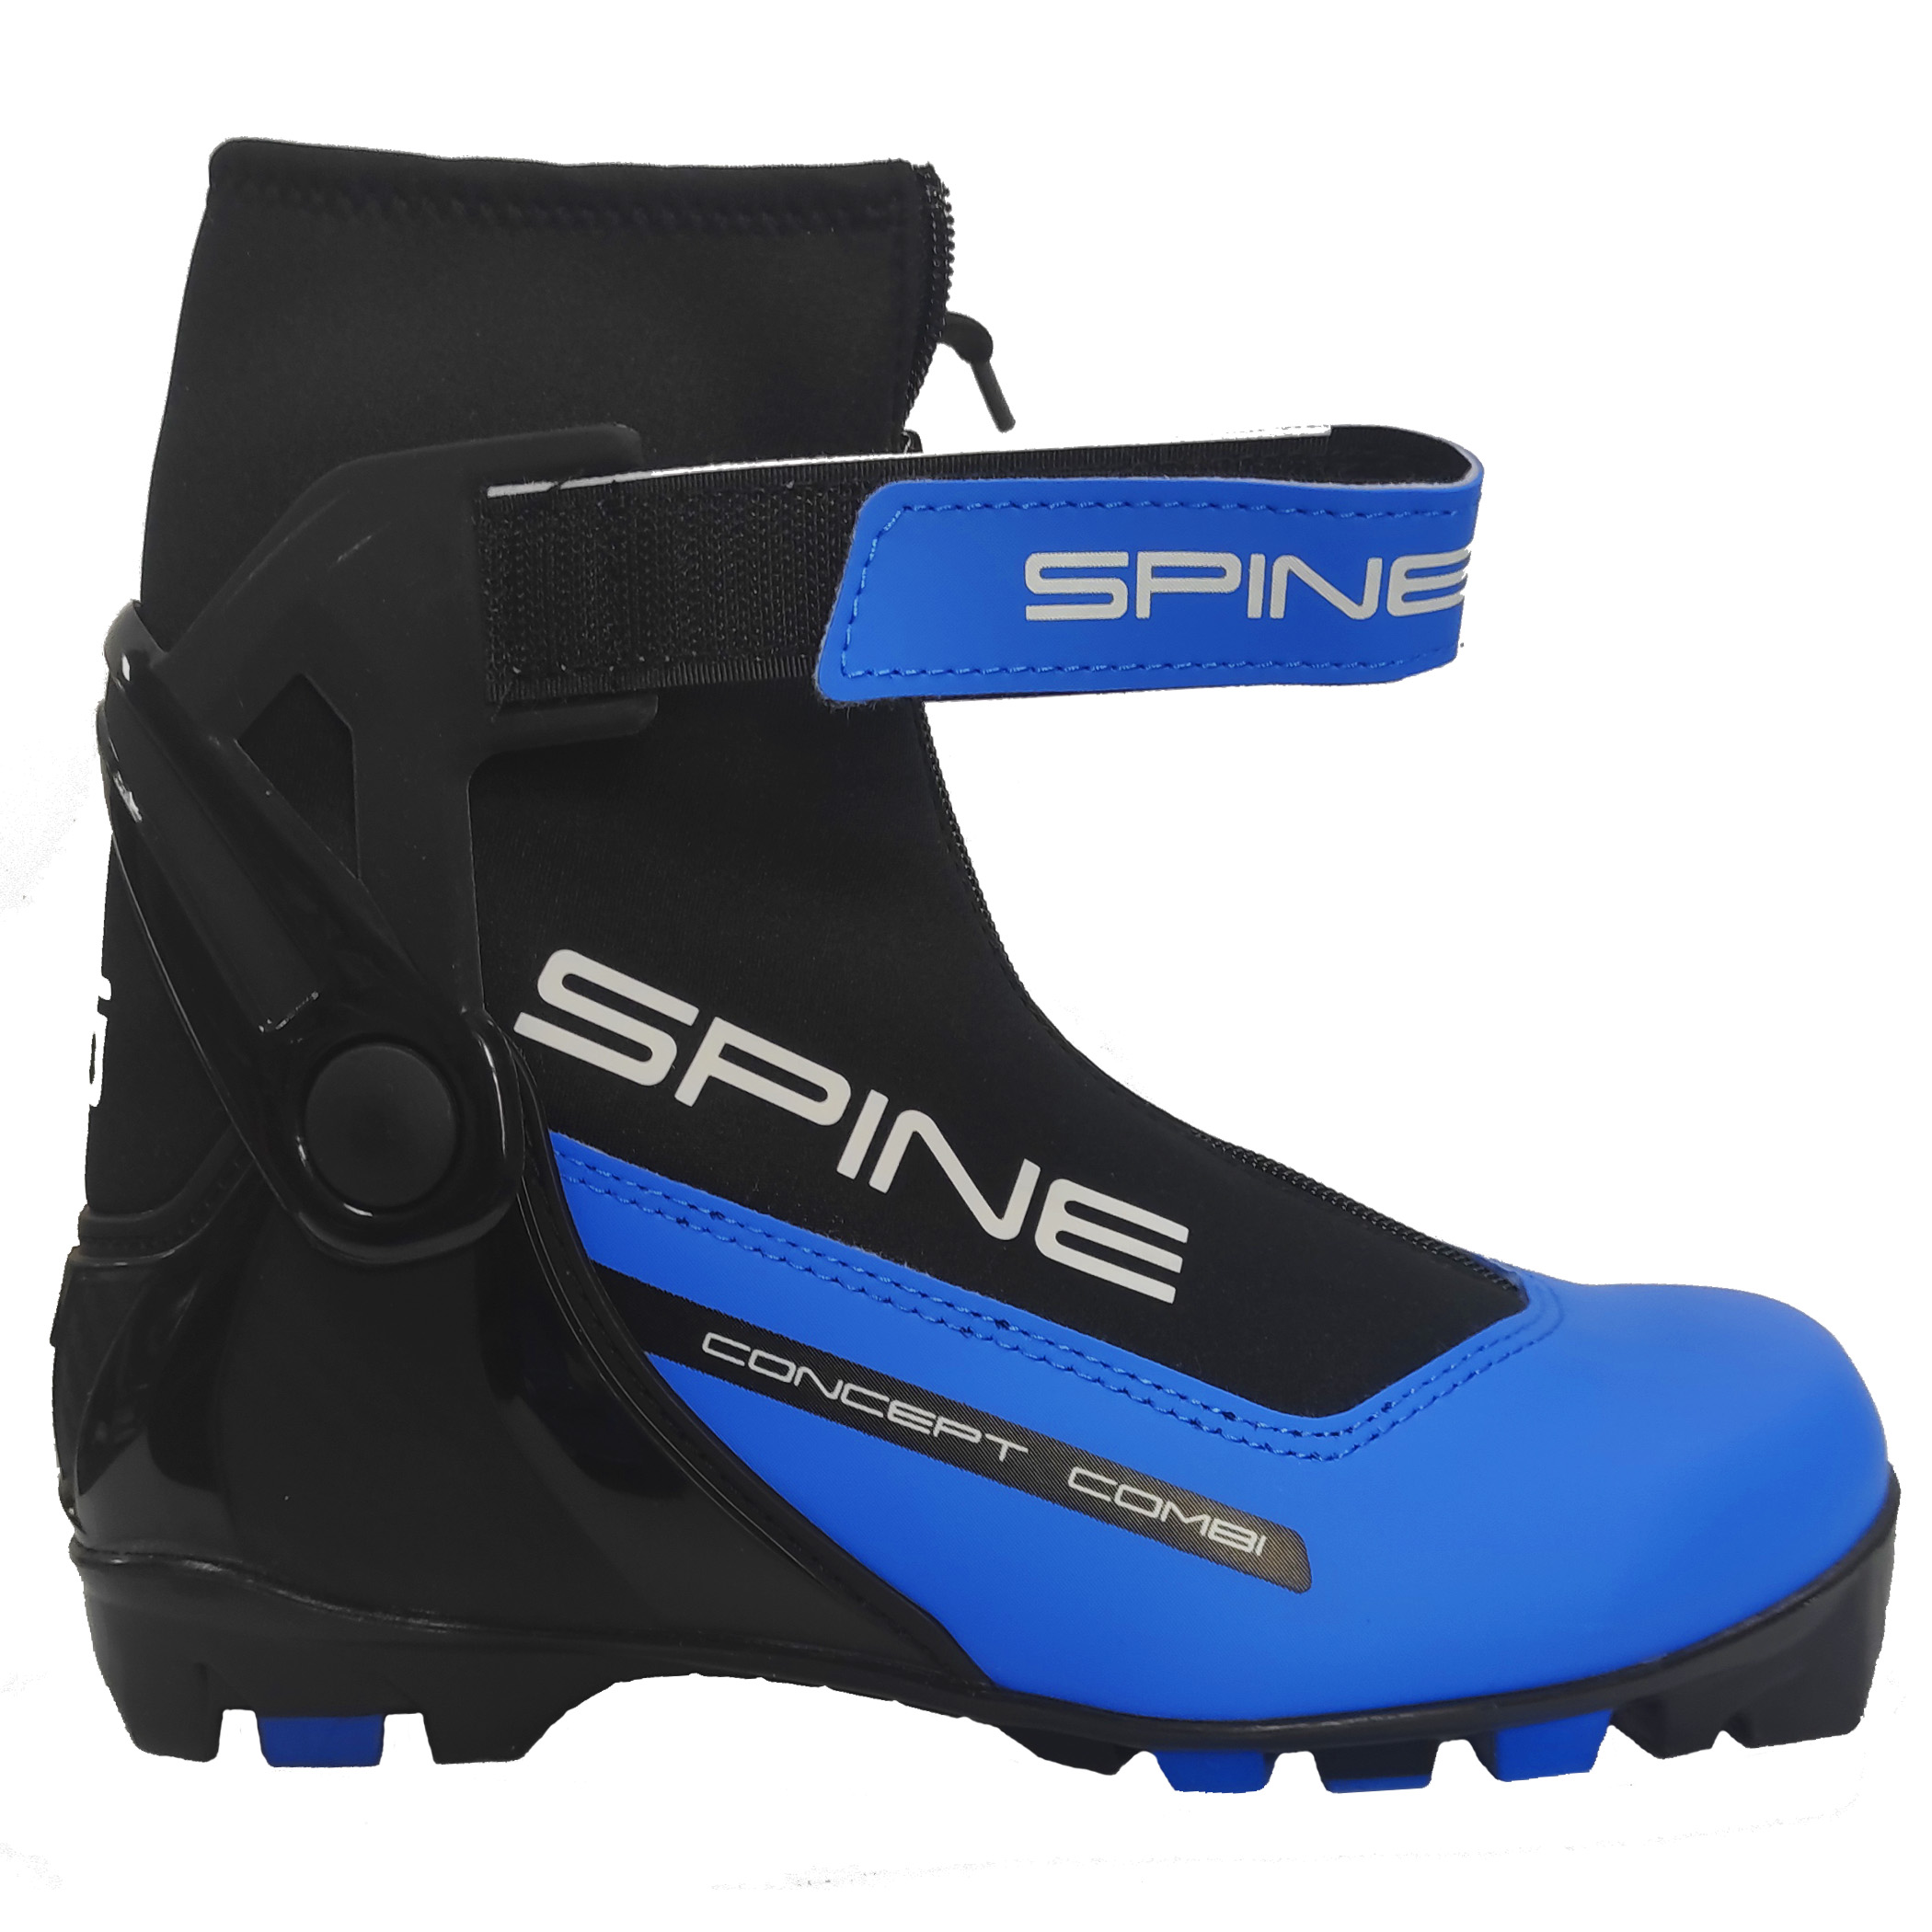 Лыжные ботинки NNN Spine Concept Combi 268, от интернет-магазина Spine-equip